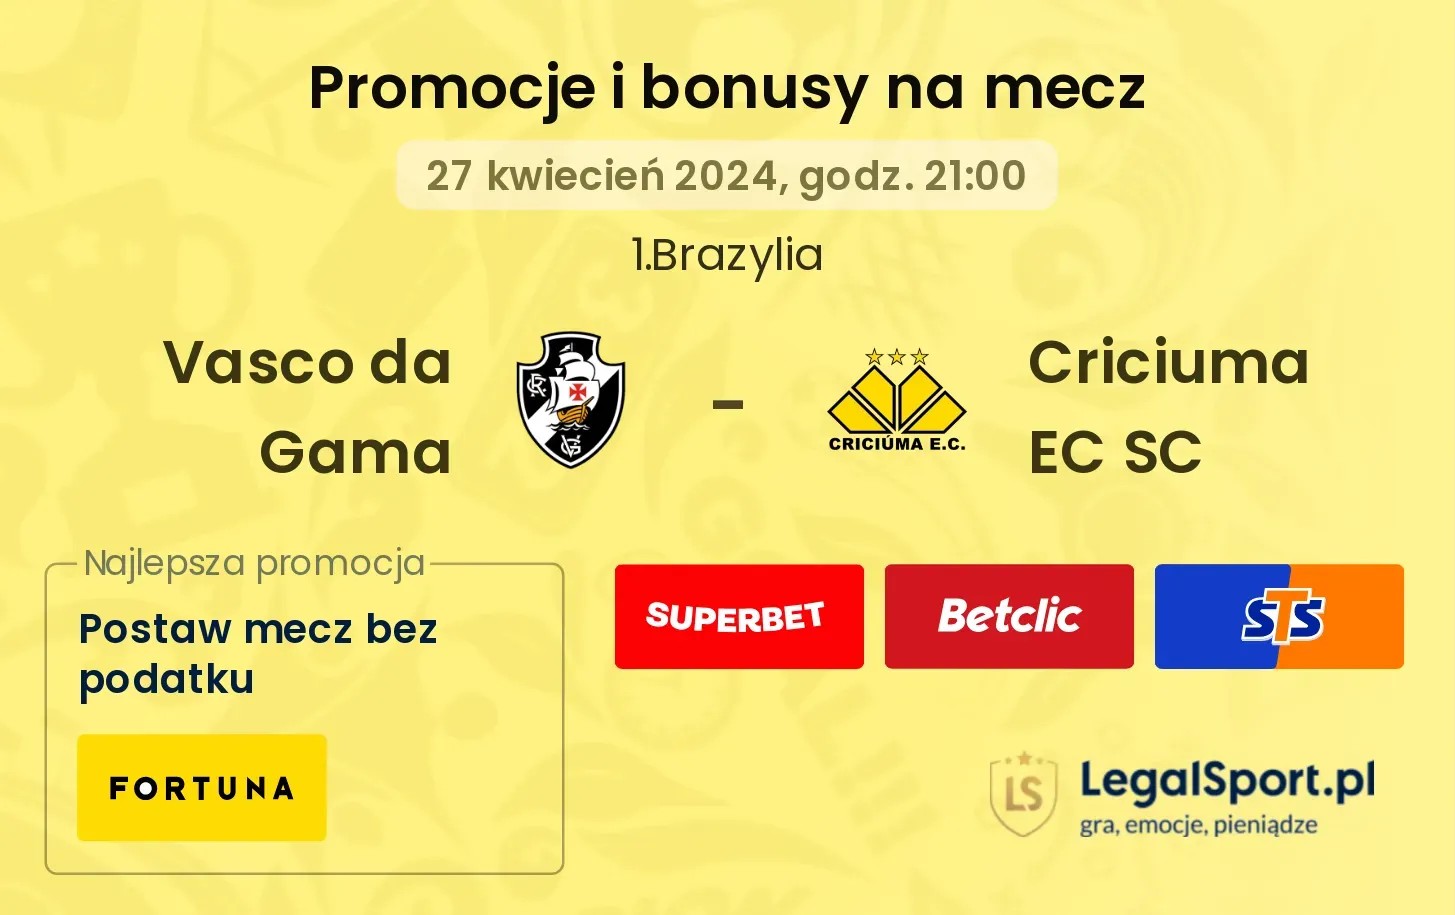 Vasco da Gama - Criciuma EC SC promocje bonusy na mecz